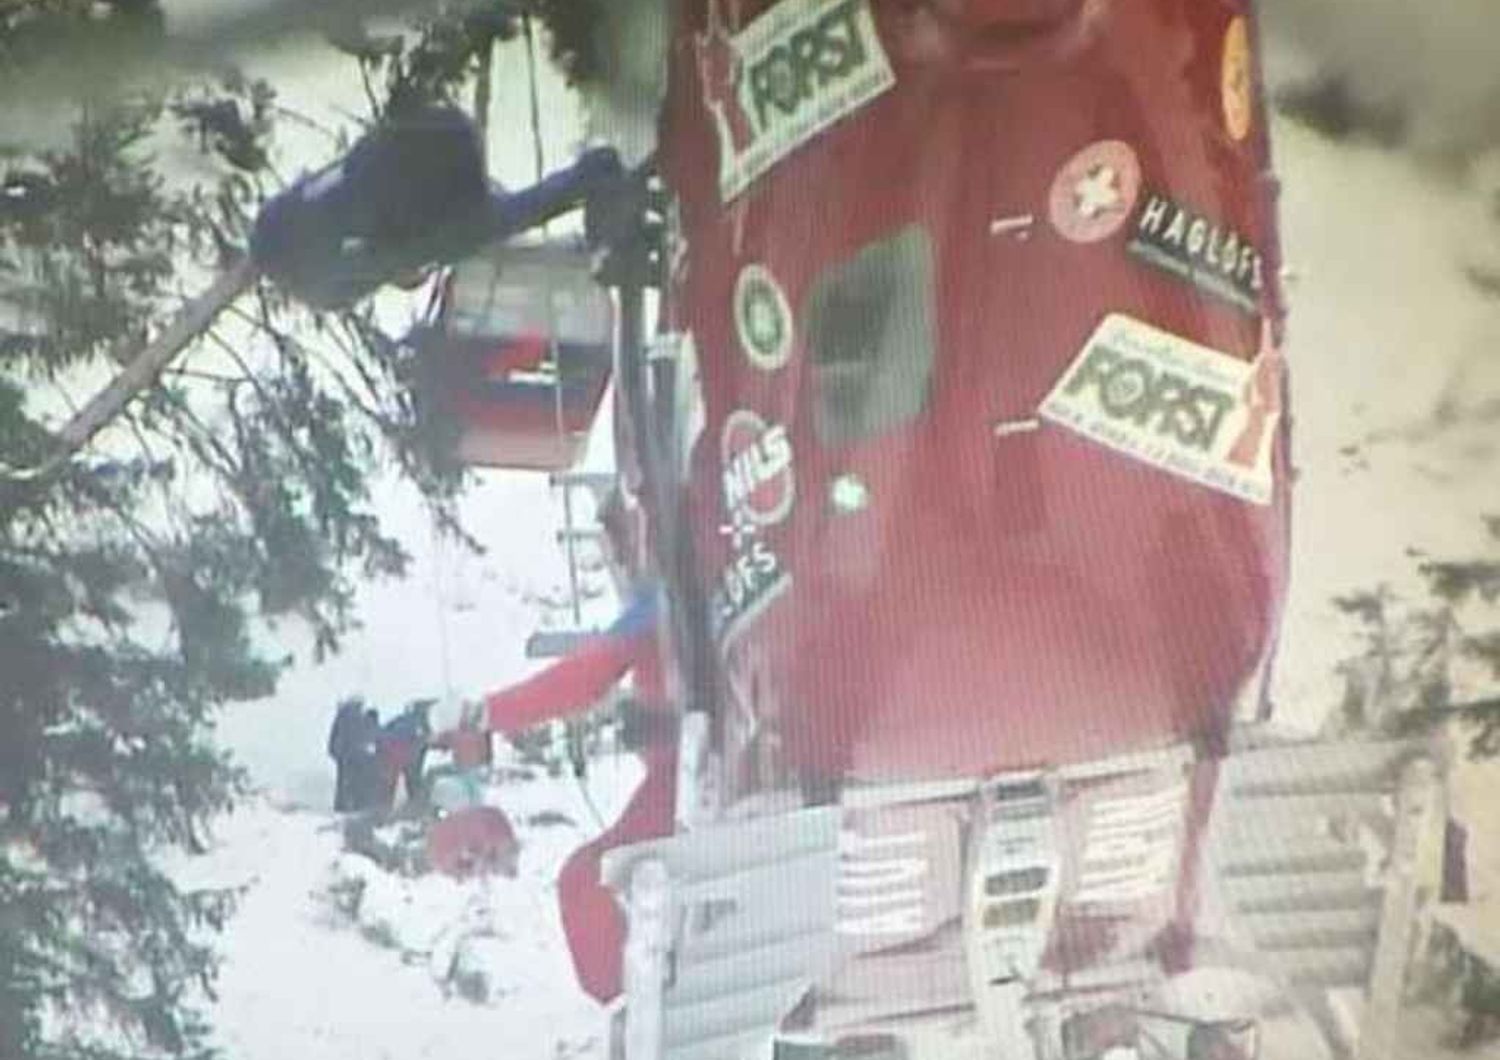 Albero su cabinovia in Val Gardena, panico per 200 turisti